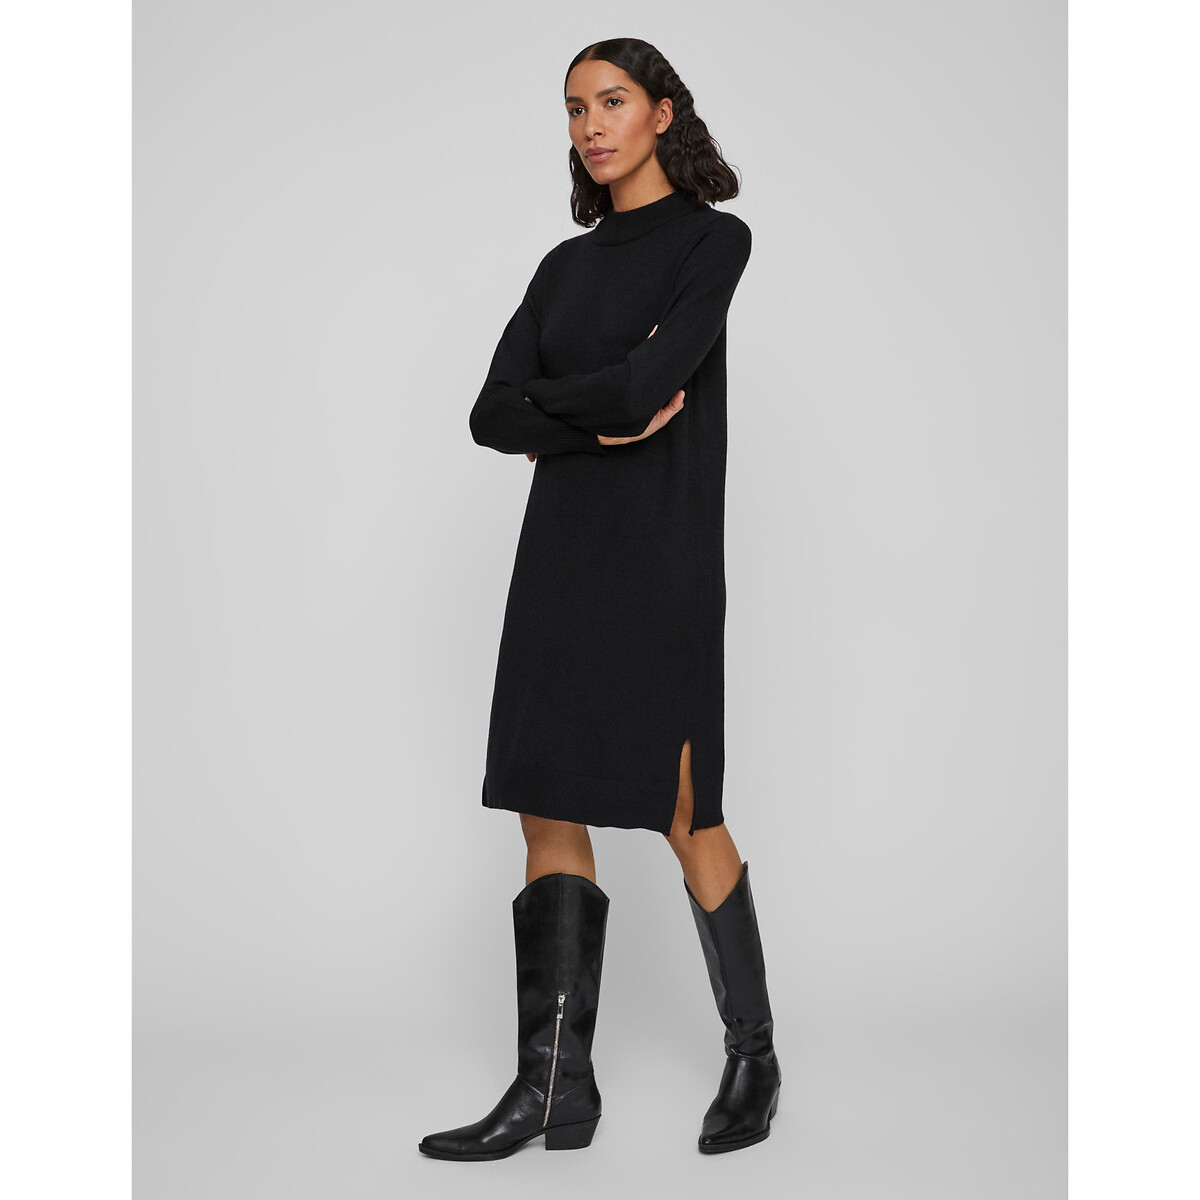 Платье-пуловер Миди из тонкого трикотажа воротник-стойка XL черный LaRedoute, размер XL - фото 3